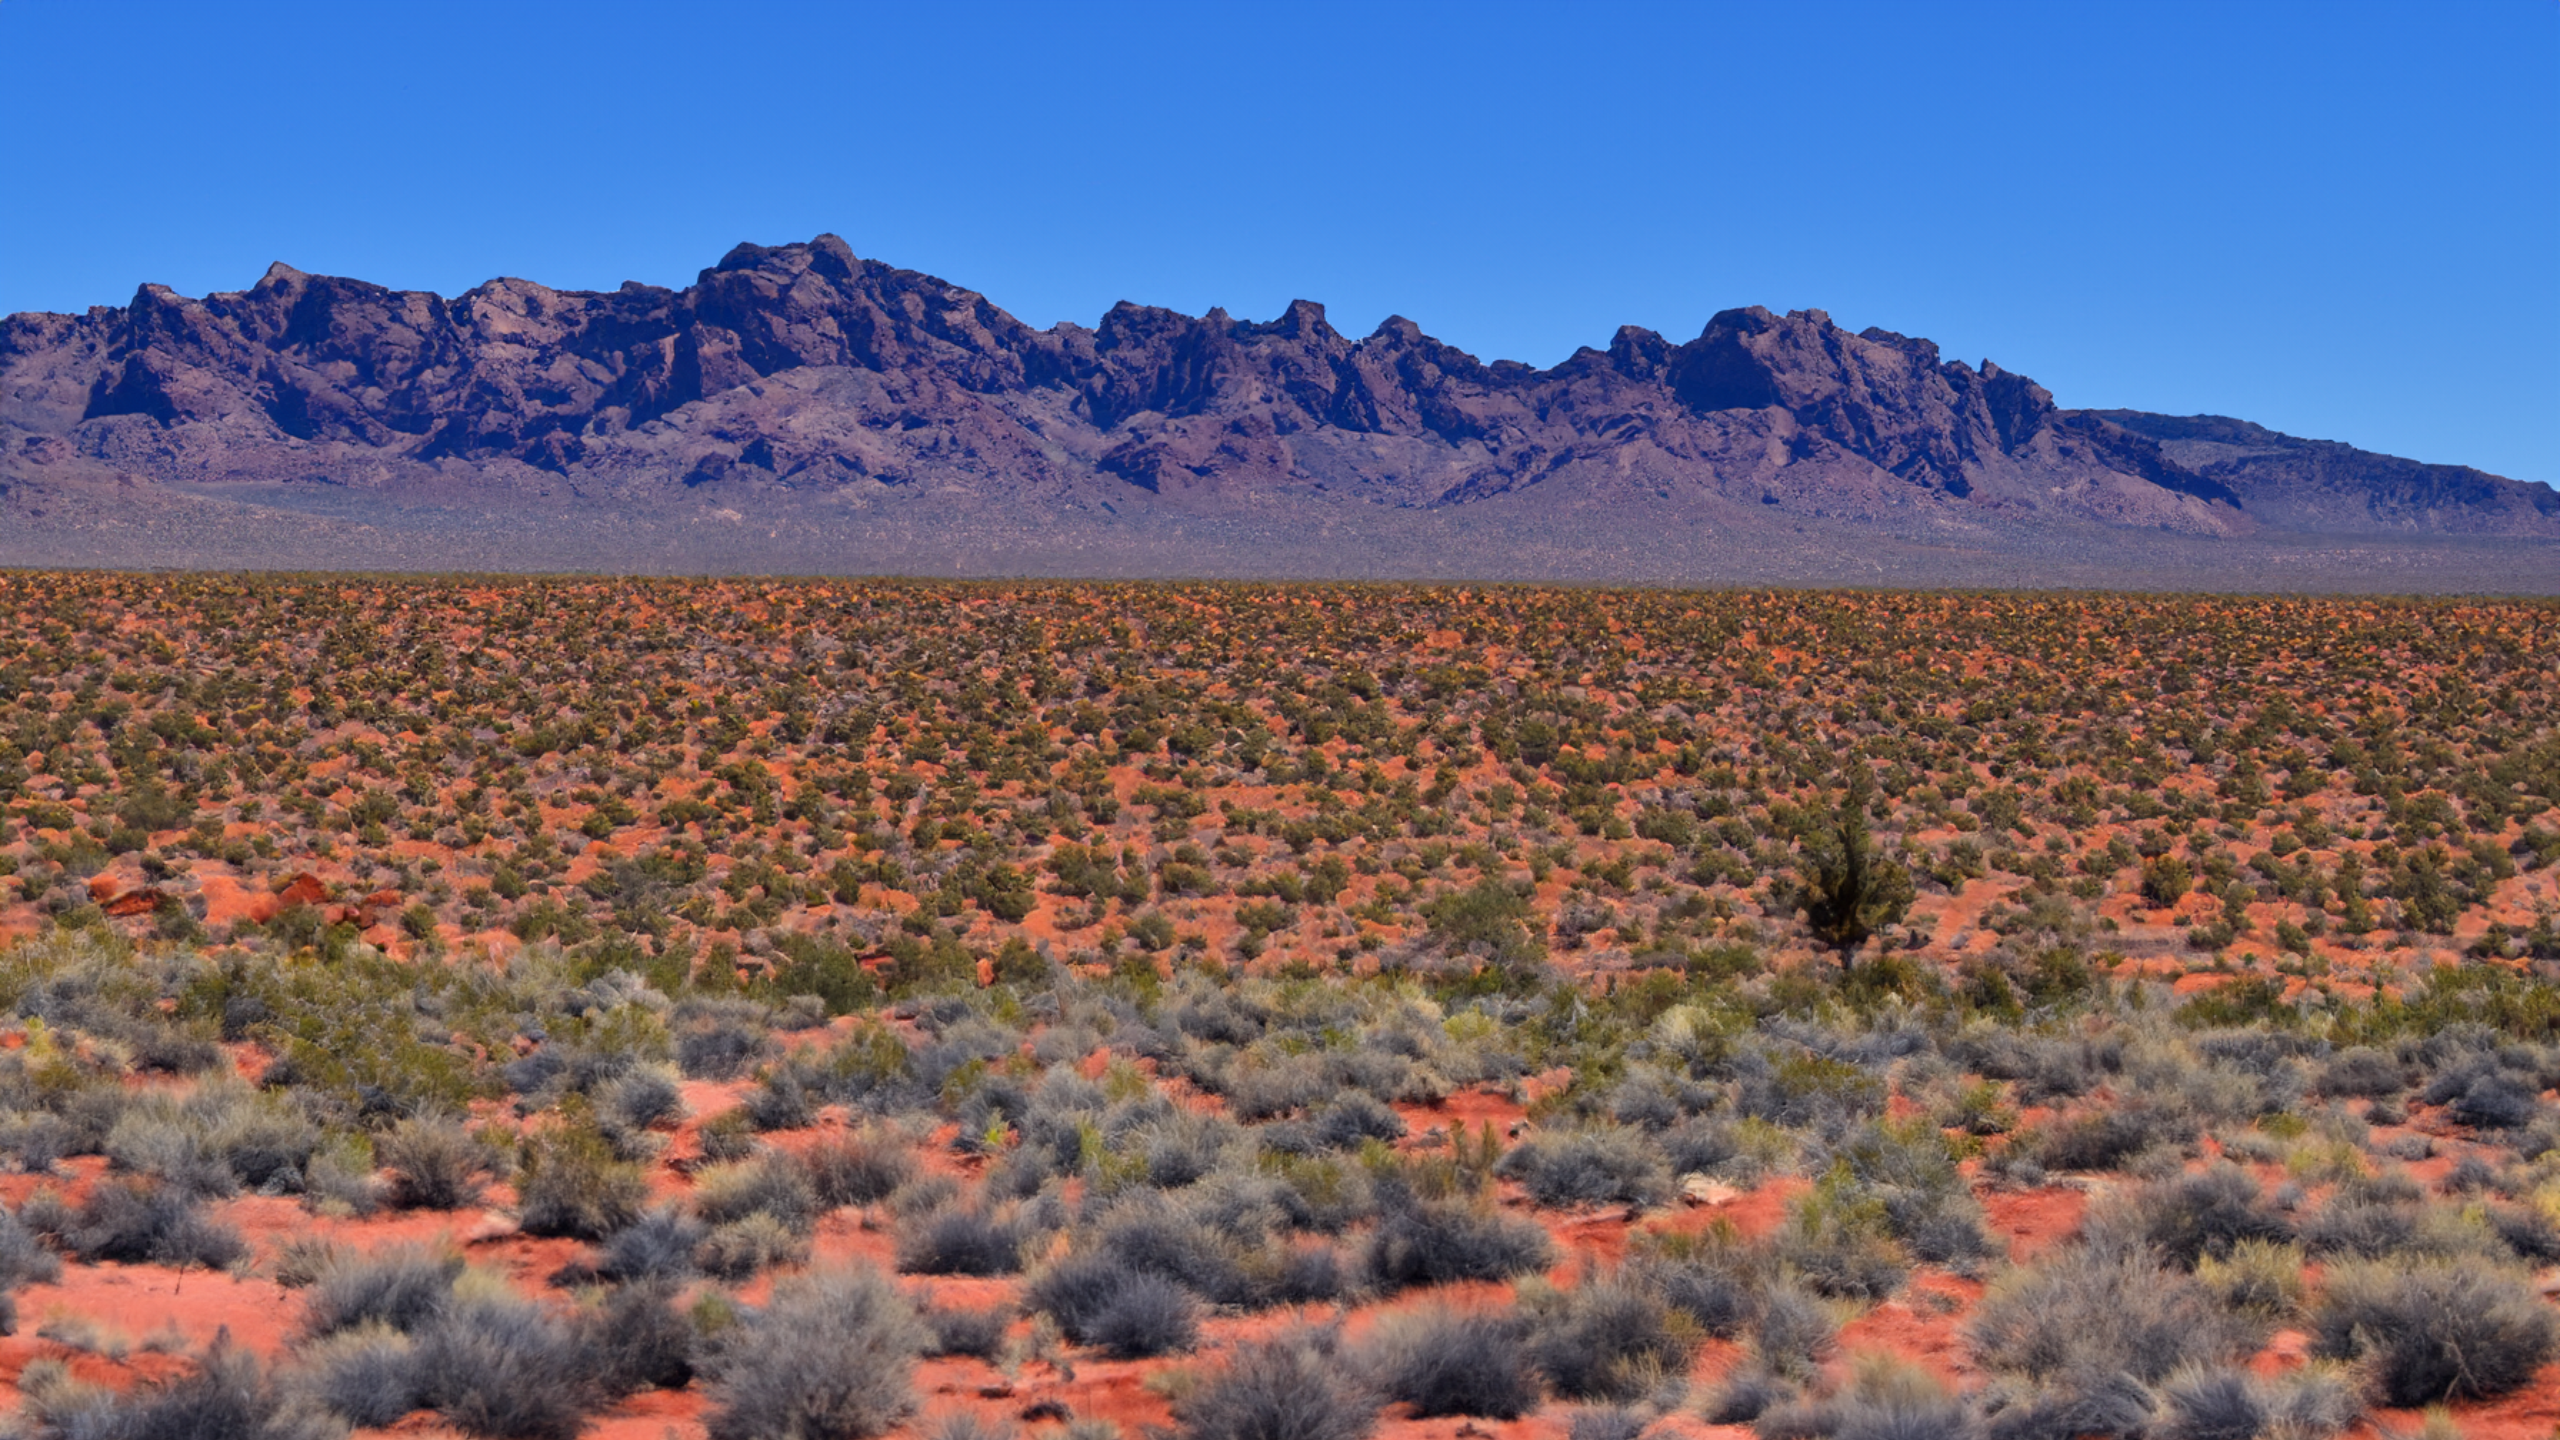 Area 51 Nevada Desert Pinon Pine Mesquite Landscape 2560x1440